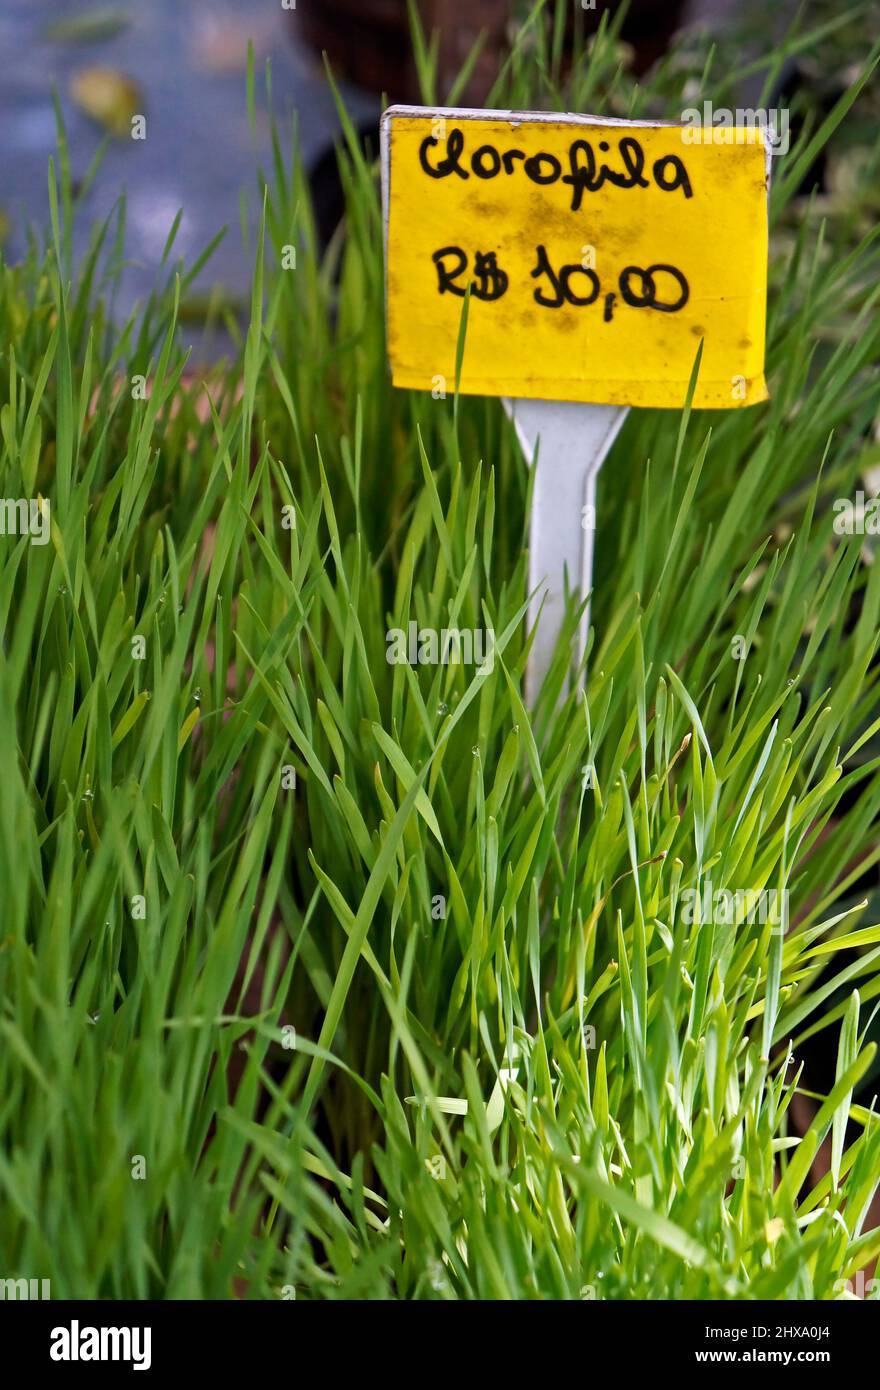 (Chlorophyll 10,00 €) Weizengras für Entgiftung und gesundes Leben Stockfoto